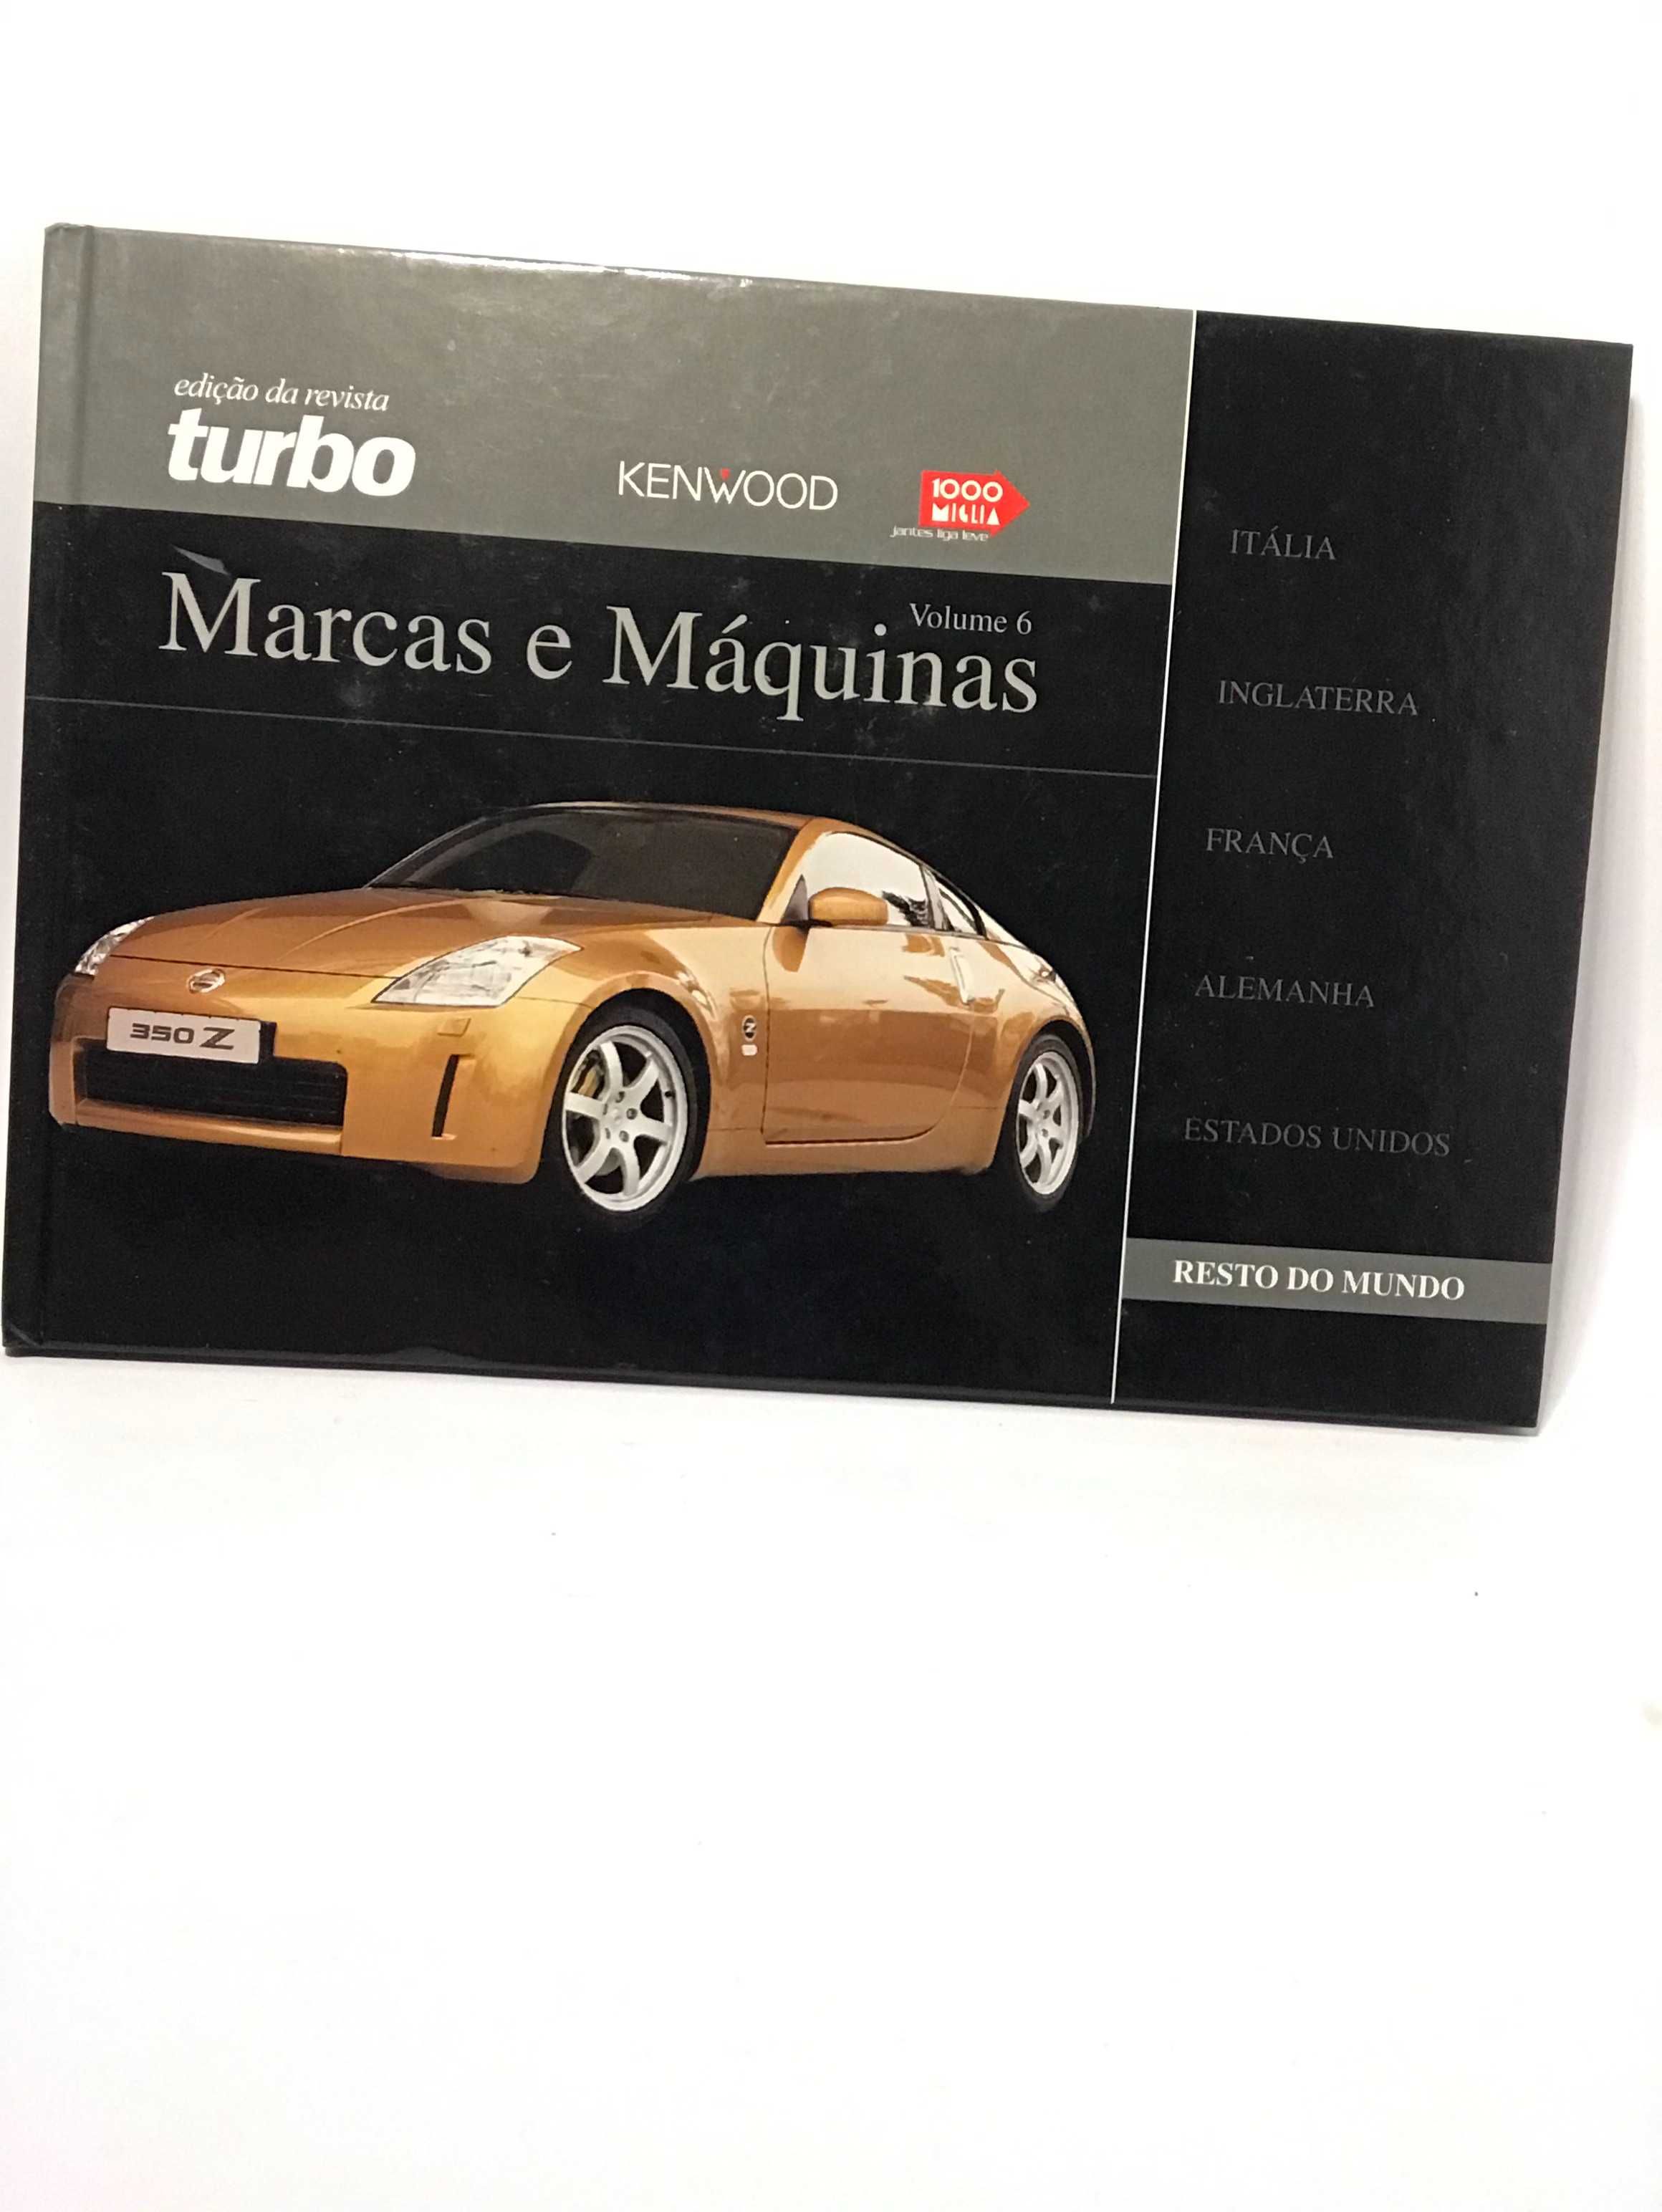 Marcas e Máquinas da edição da revista Turbo